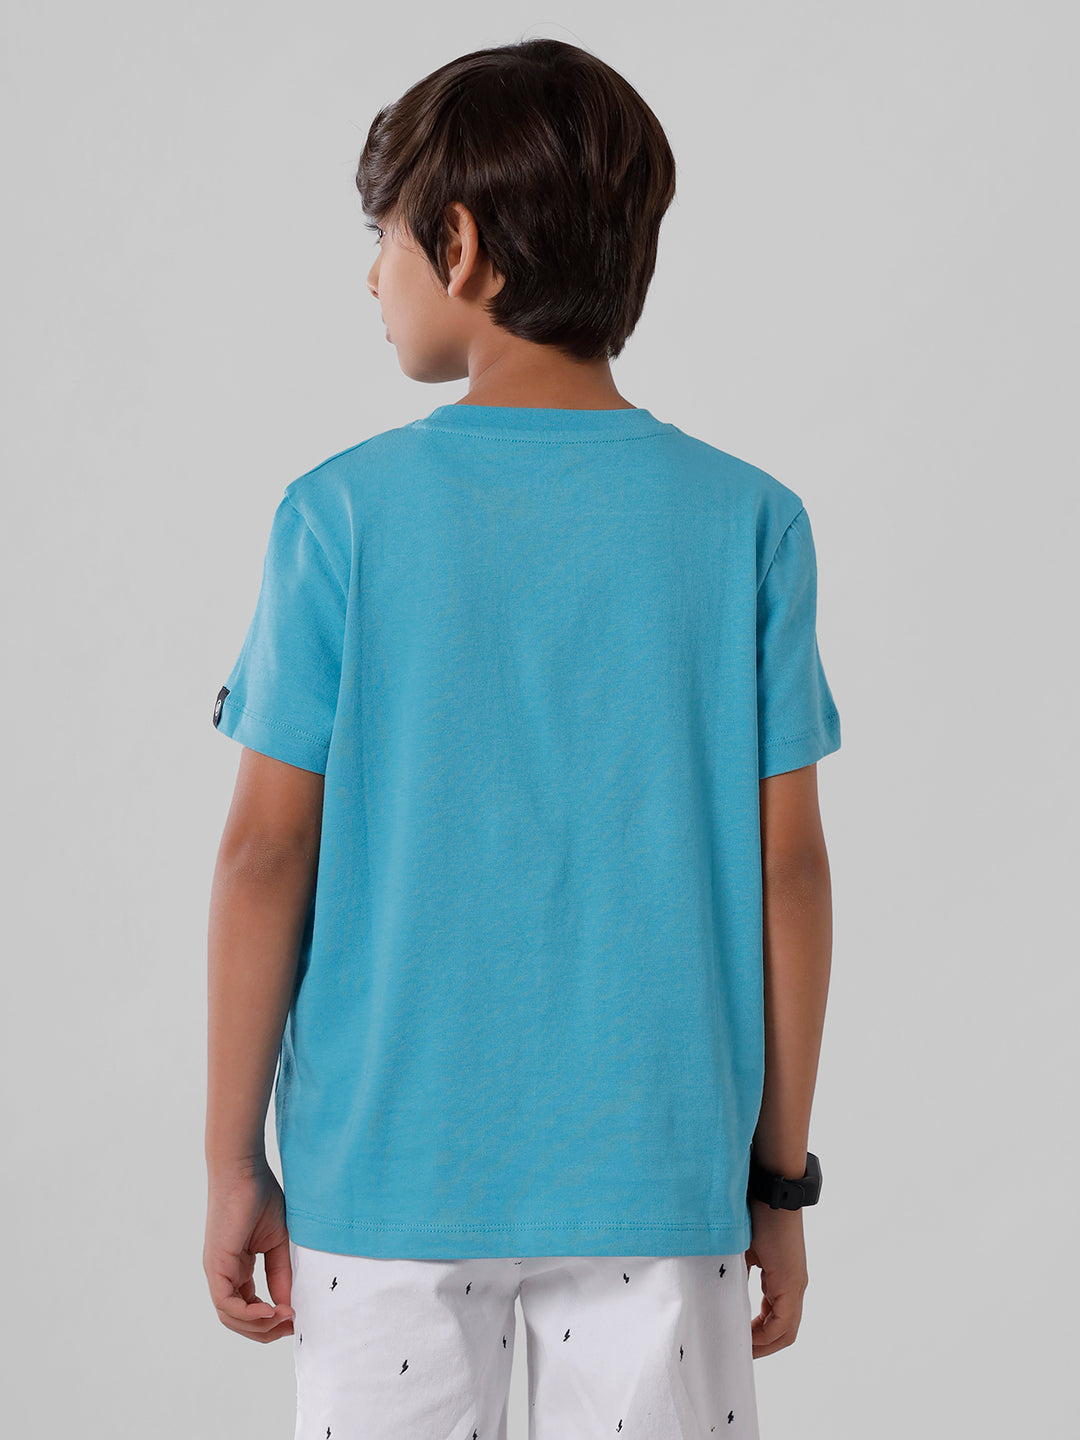 PIPIN Boys Printed T-shirt Blue